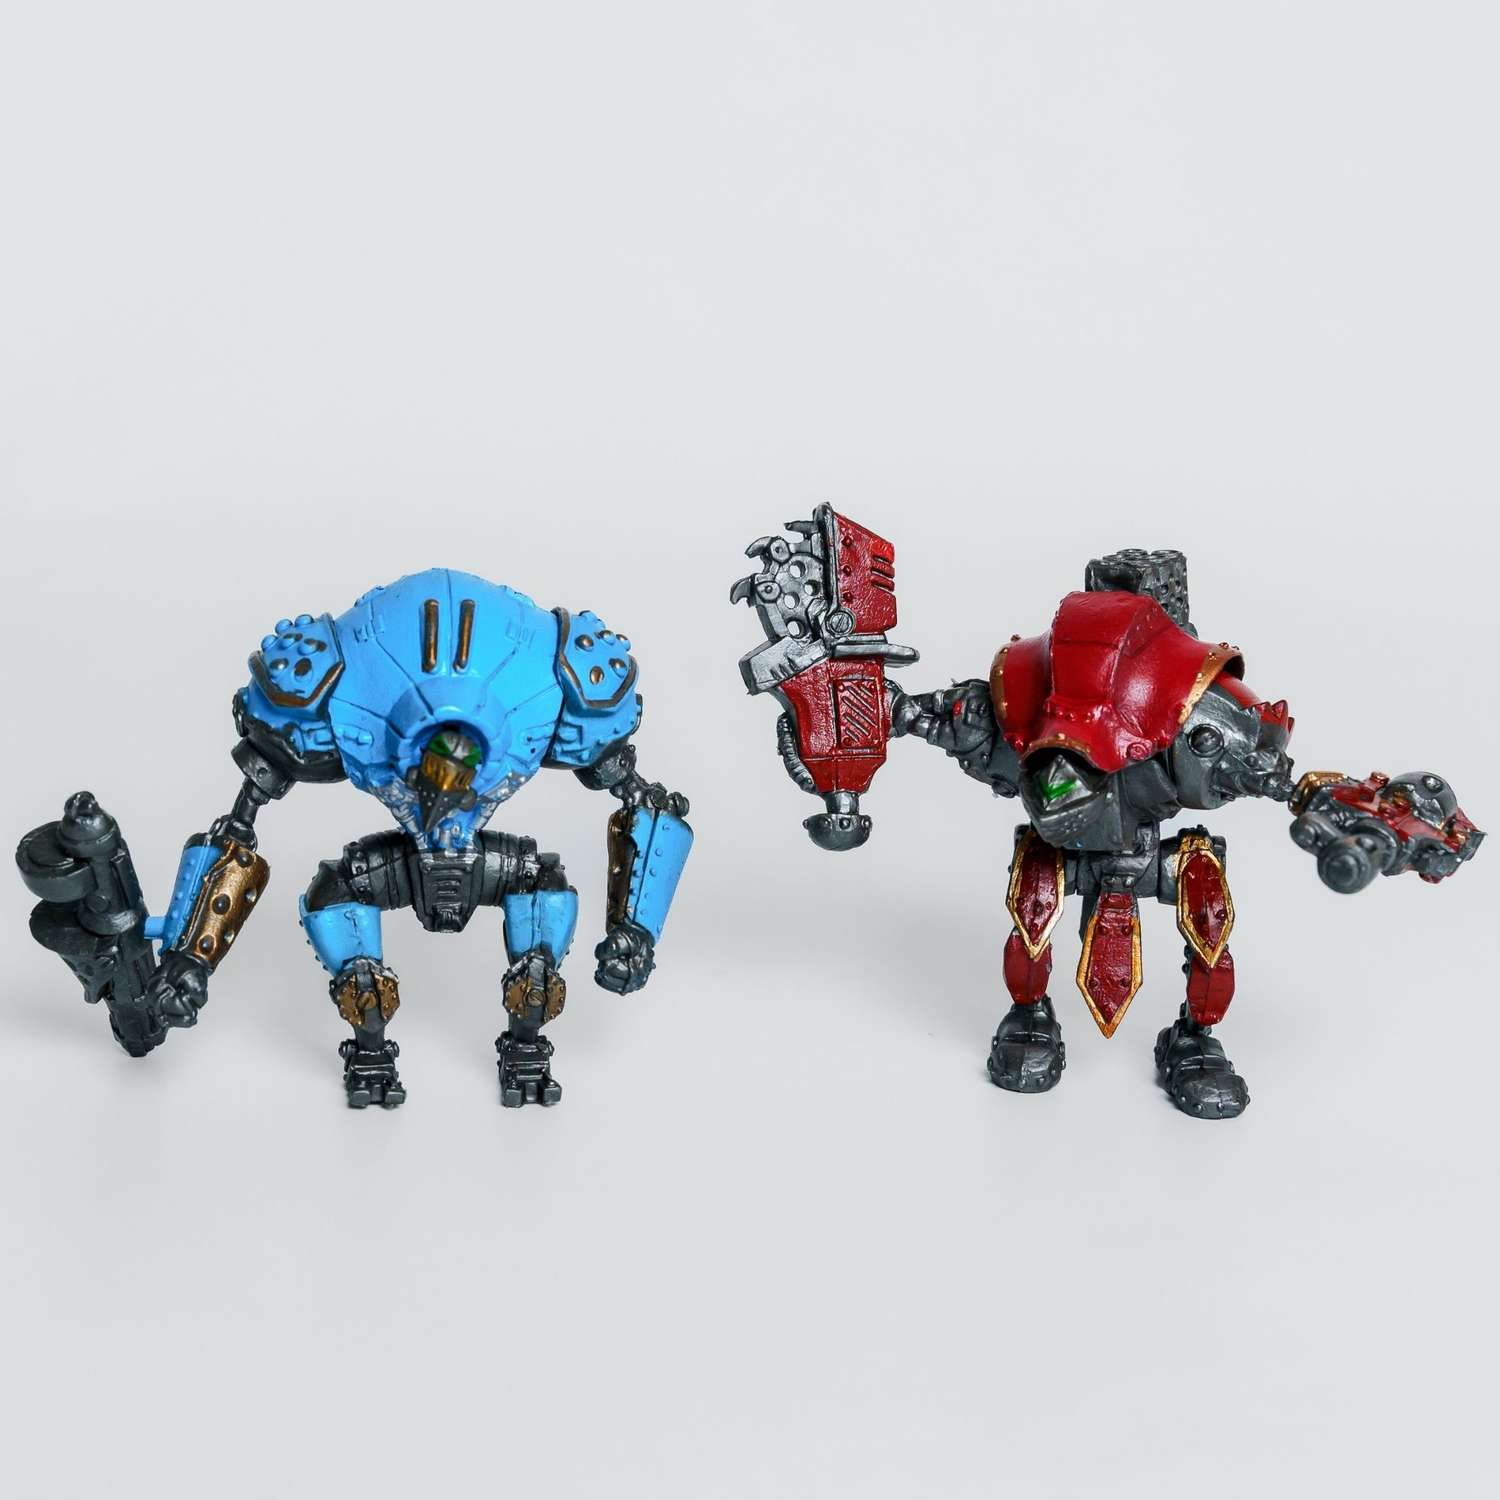 Роботы CyberCode 2 фигурки игрушки для детей развивающие пластиковые коллекционные интересные. 8см - фото 1